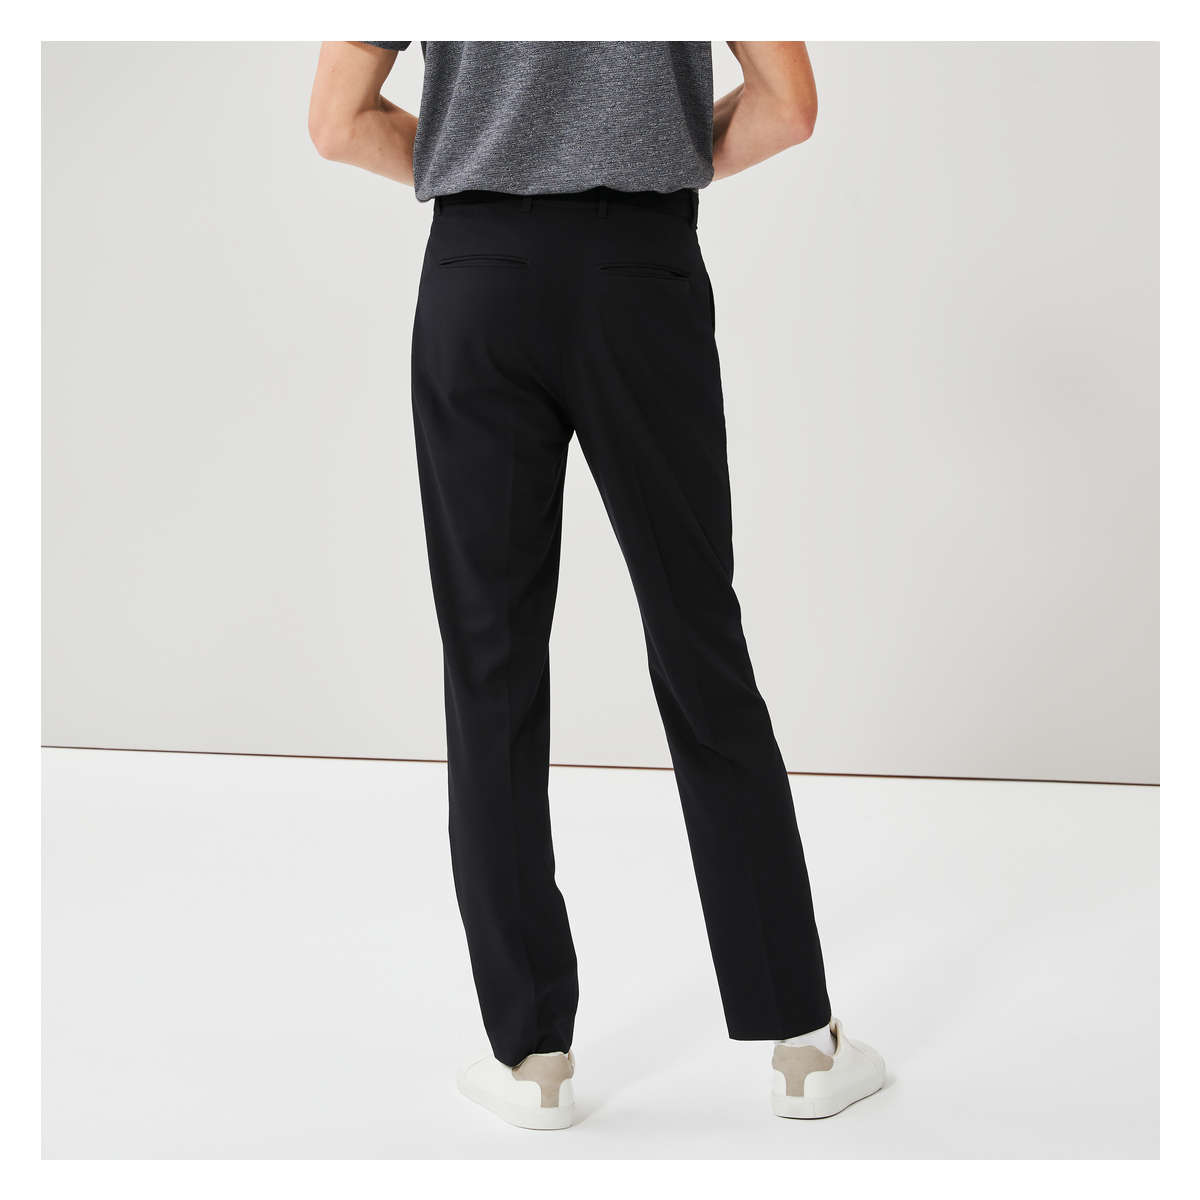 Men's Premium Fit Dress Pant in Black from Joe Fresh